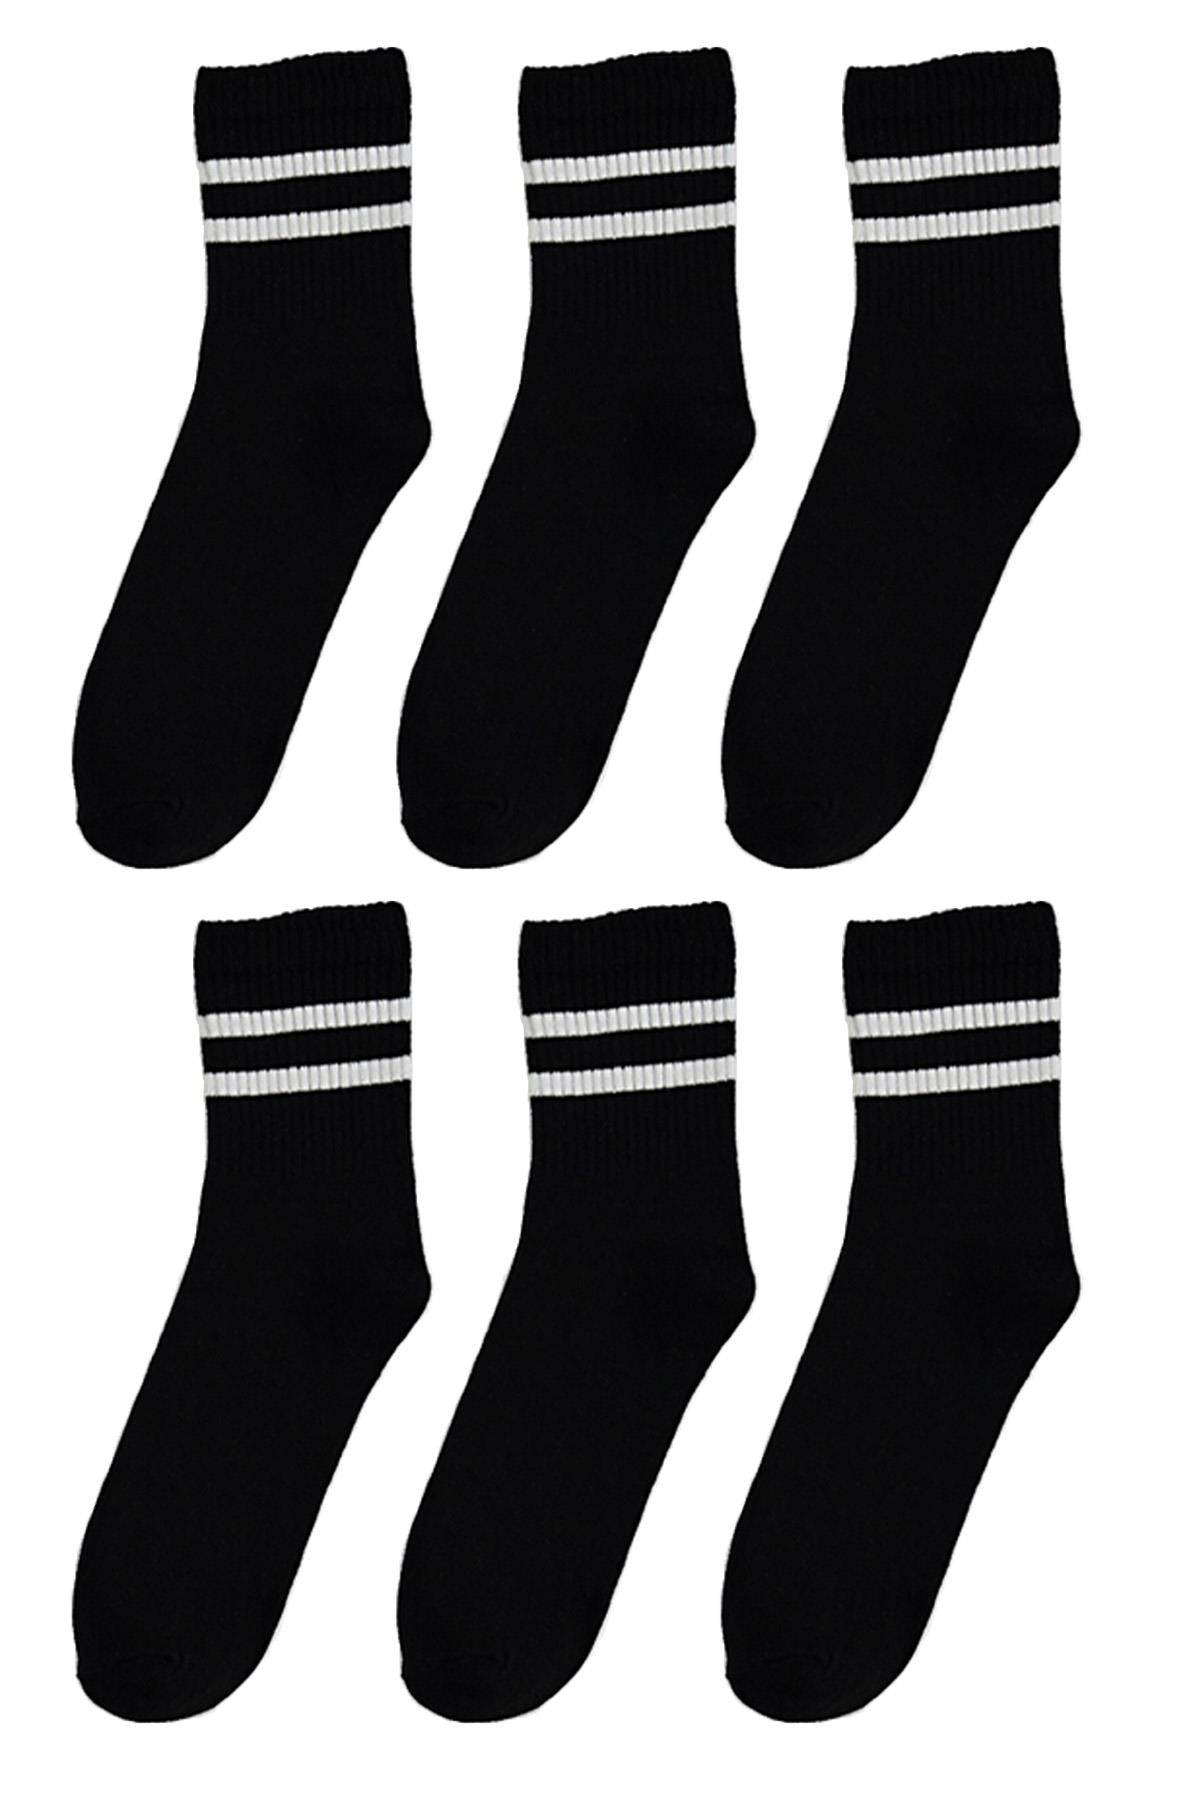 6 Pack Cotton Striped Half Concert Men - Female Unisex Socks